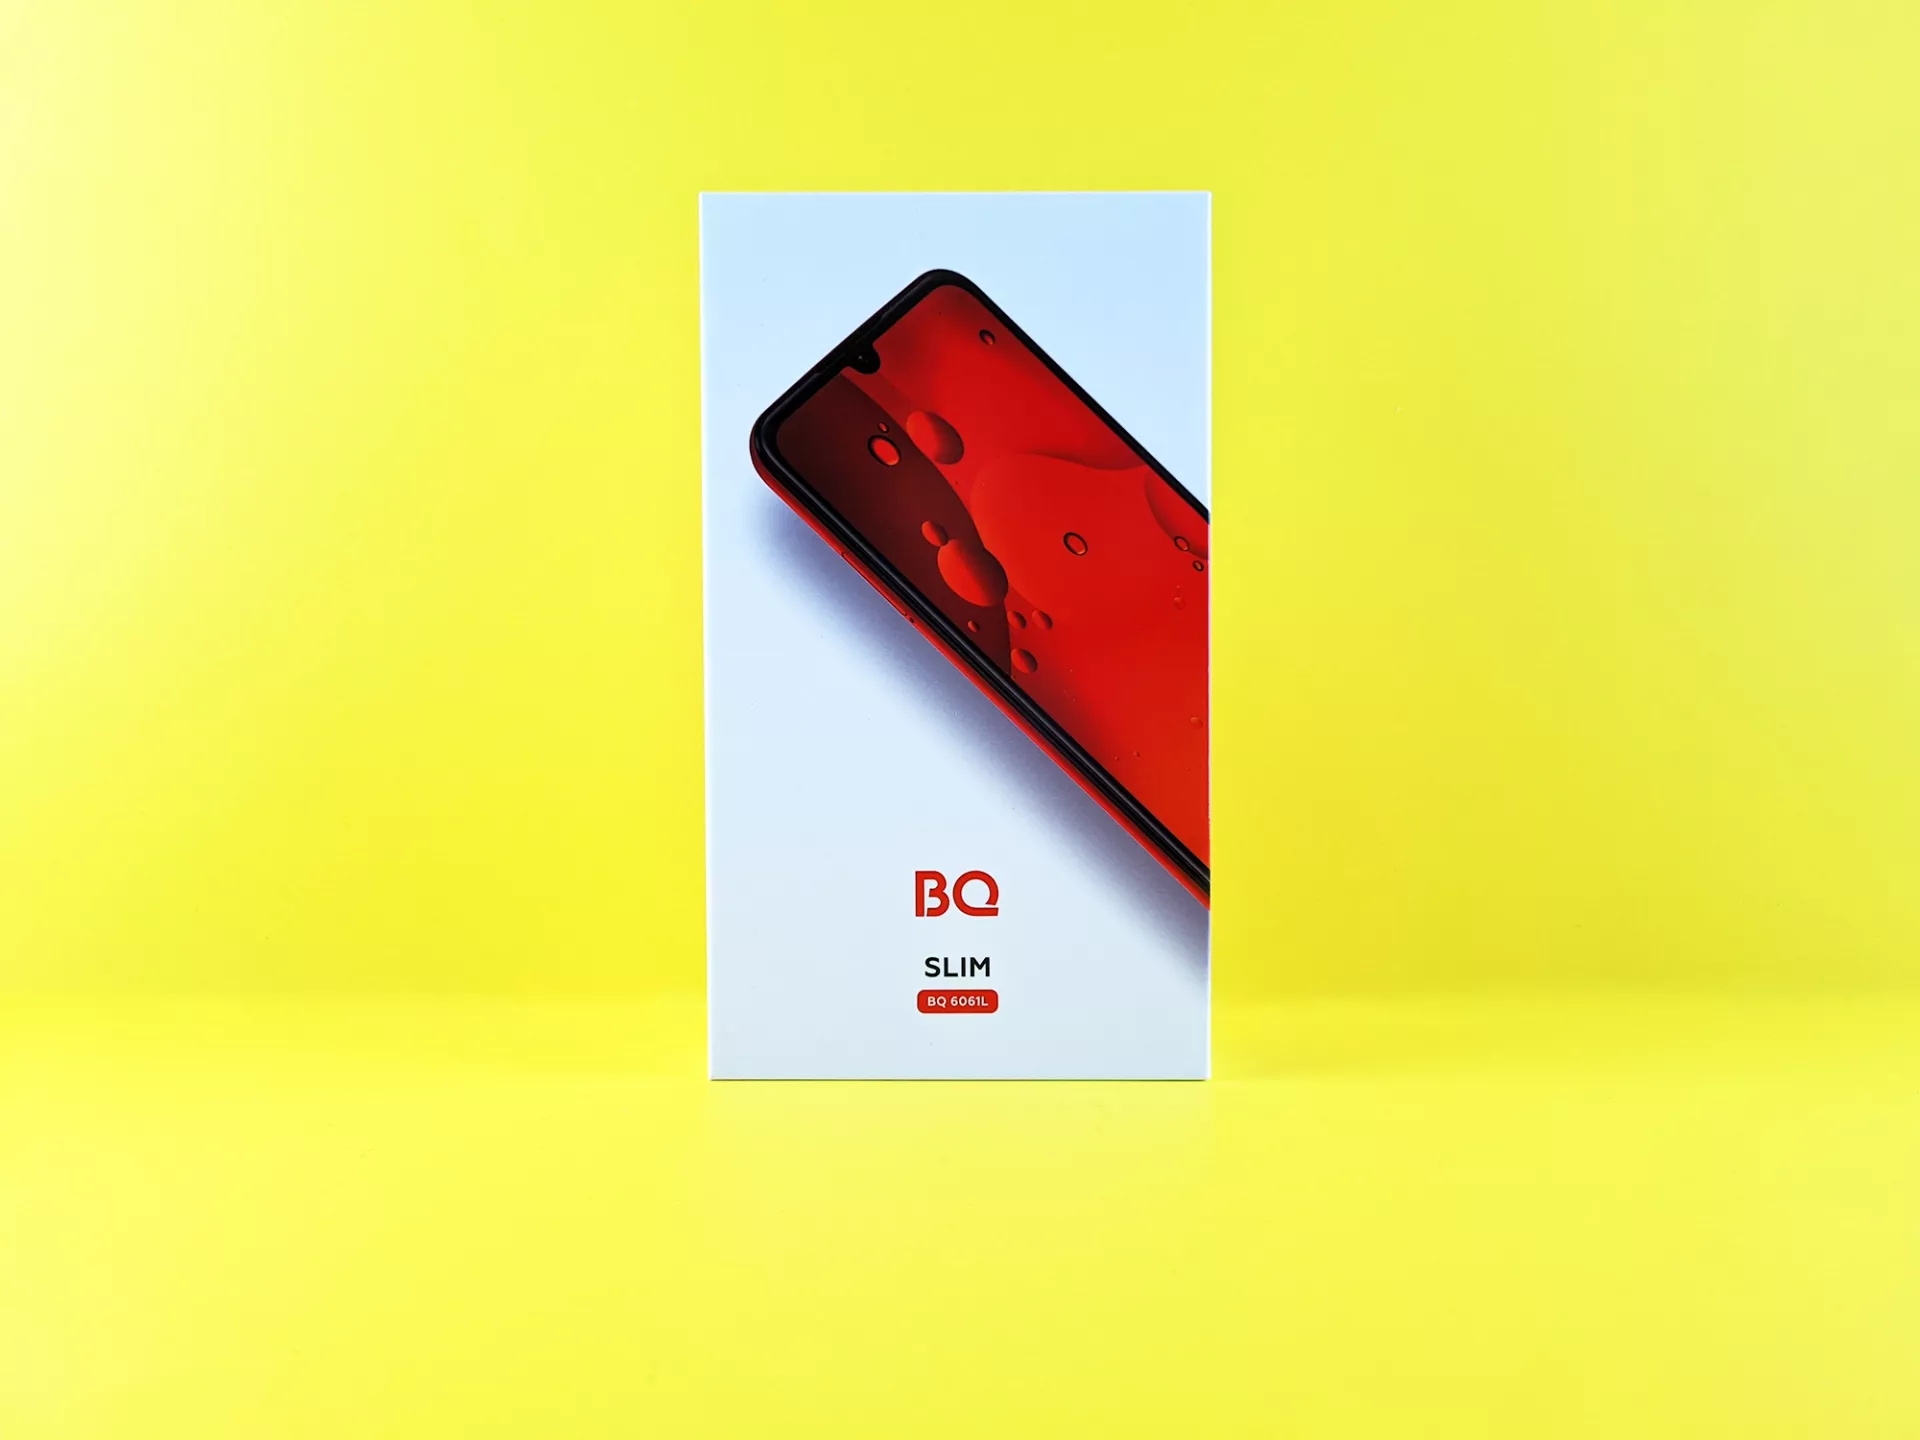 Тест-драйв смартфона BQ 6061L Slim